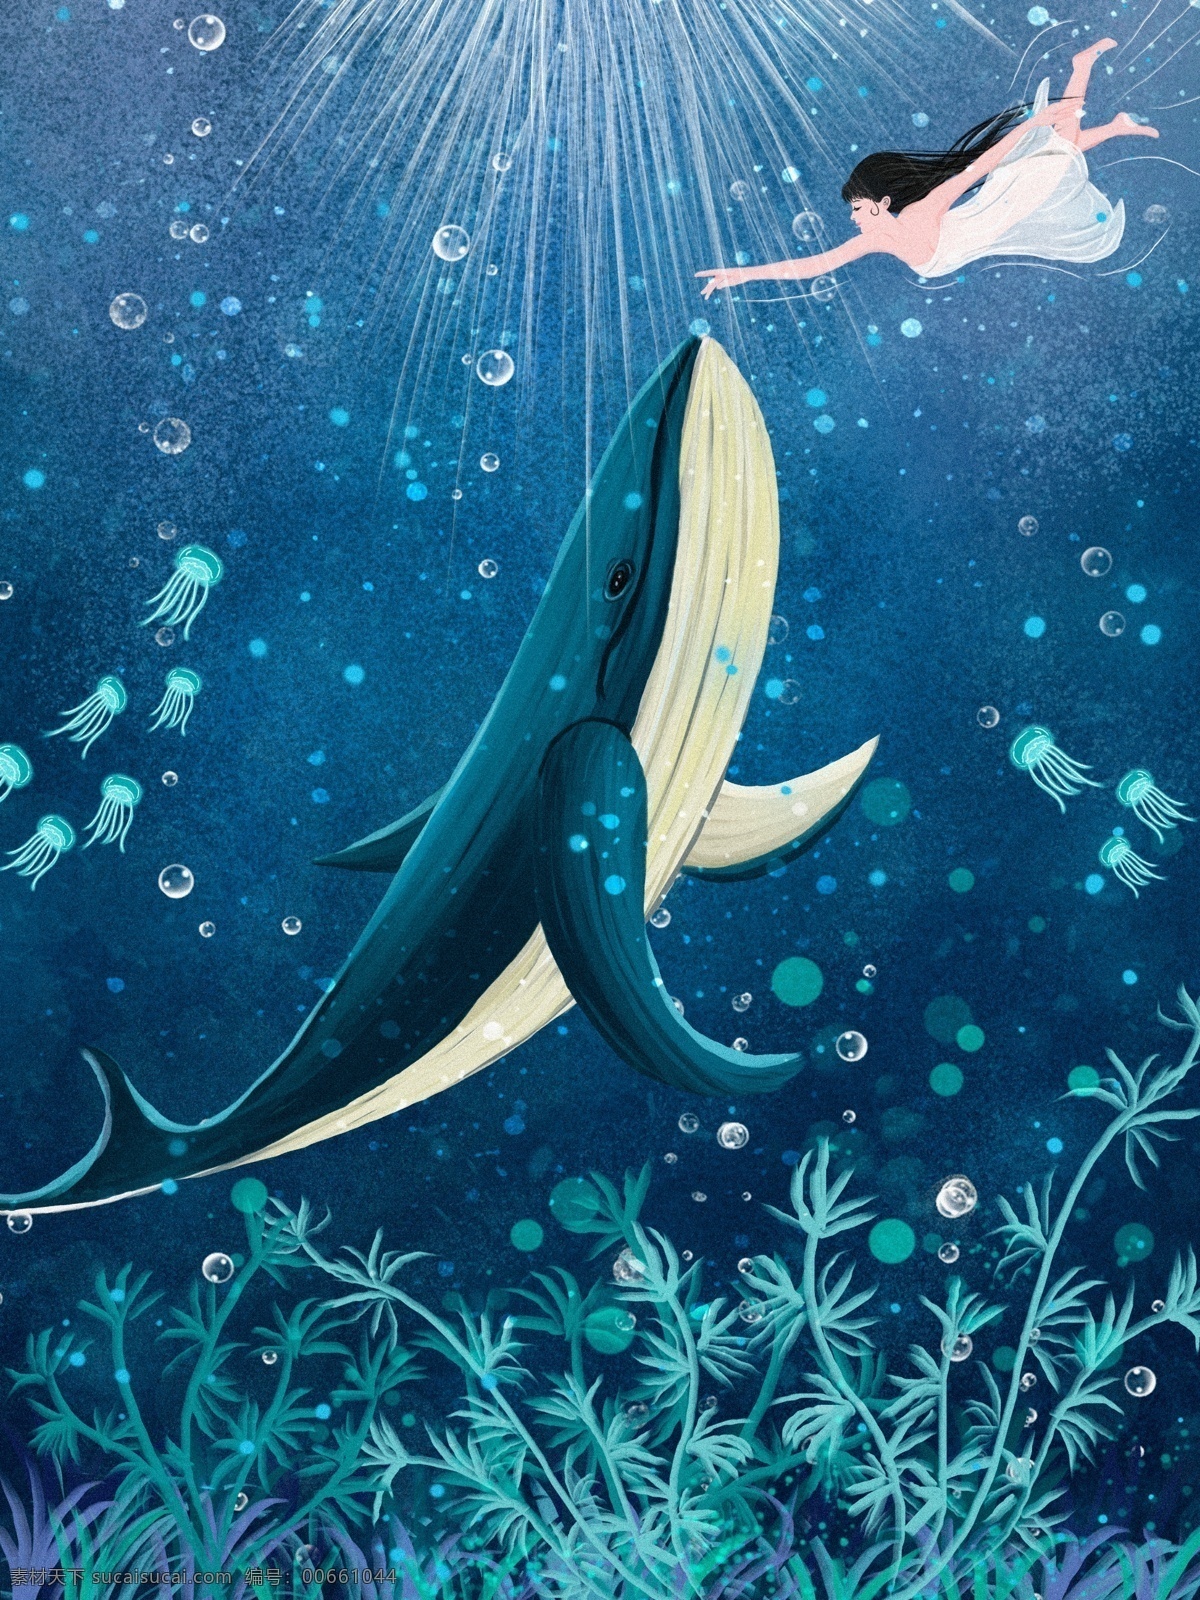 原创 深海 遇 鲸 情感 治愈 插画 蓝色 海洋 水泡 深海遇鲸 鲸鱼 水母 水草 海蓝时遇鲸 蓝鲸